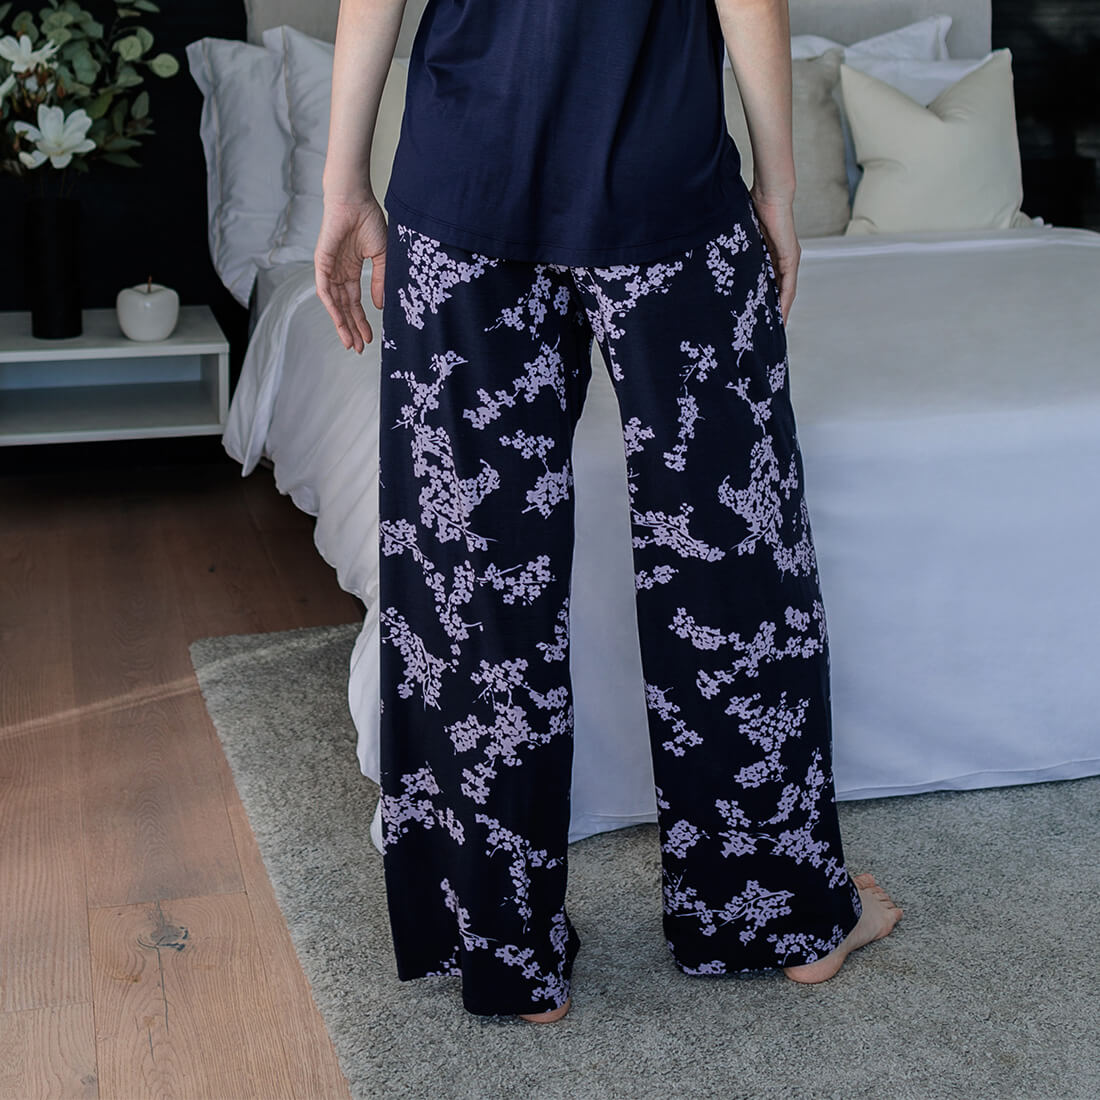 Kühlende Schlafanzug Hose Damen || Cherry blossom